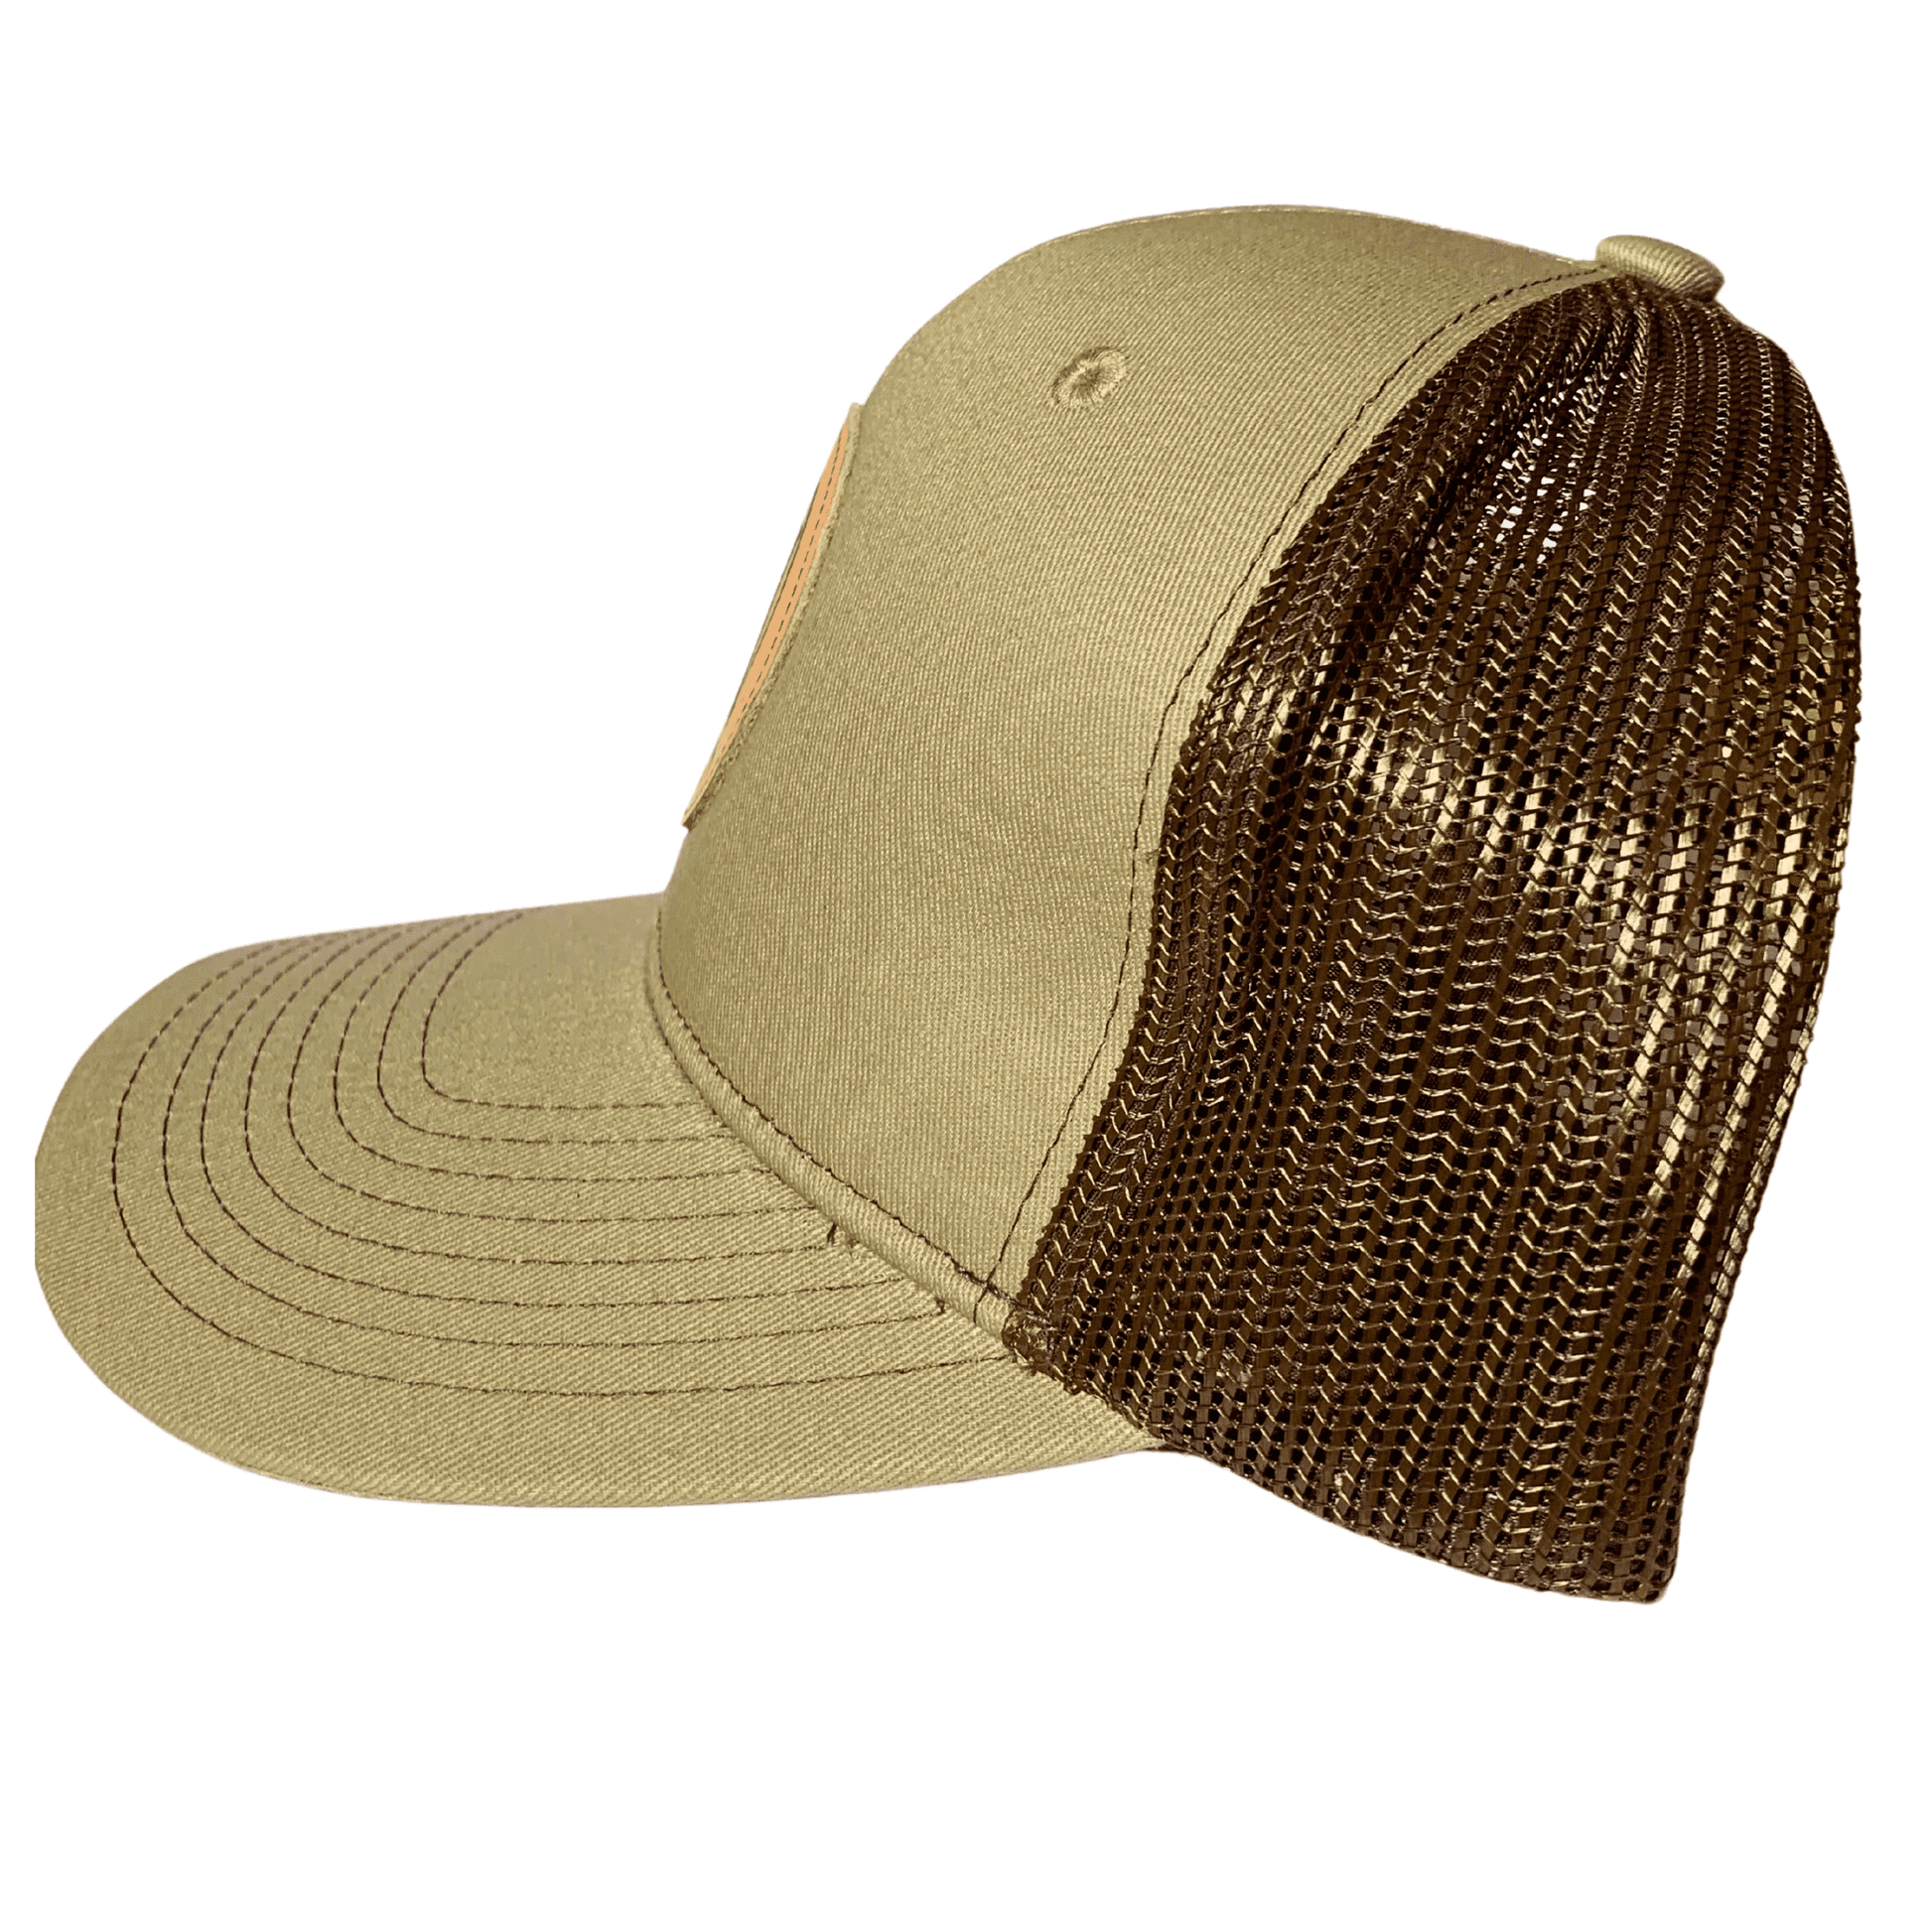 Tan Trucker Hat - Side